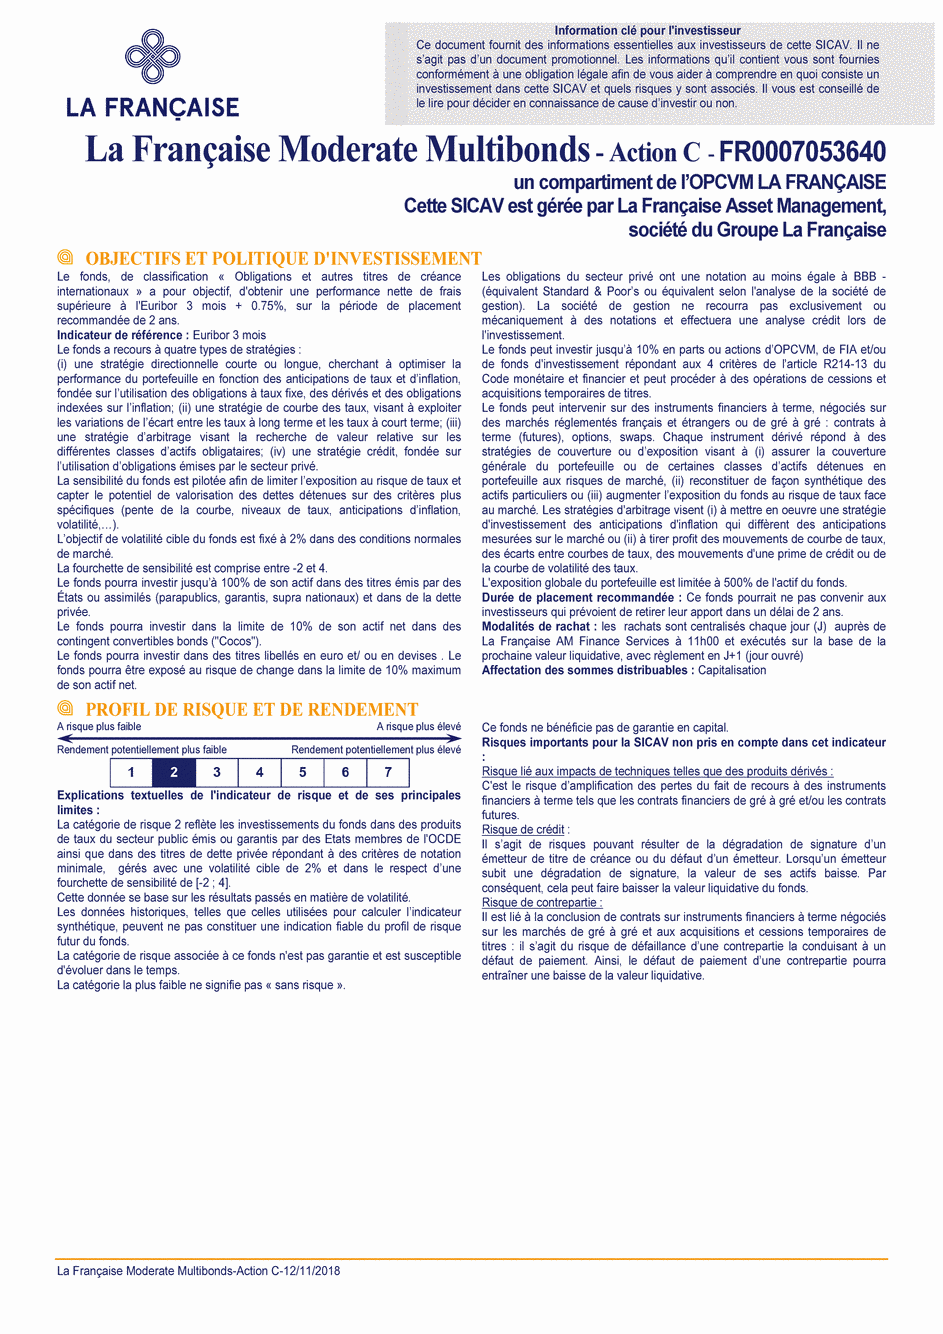 DICI La Française Moderate Multibonds - Part C - 12/11/2018 - Français